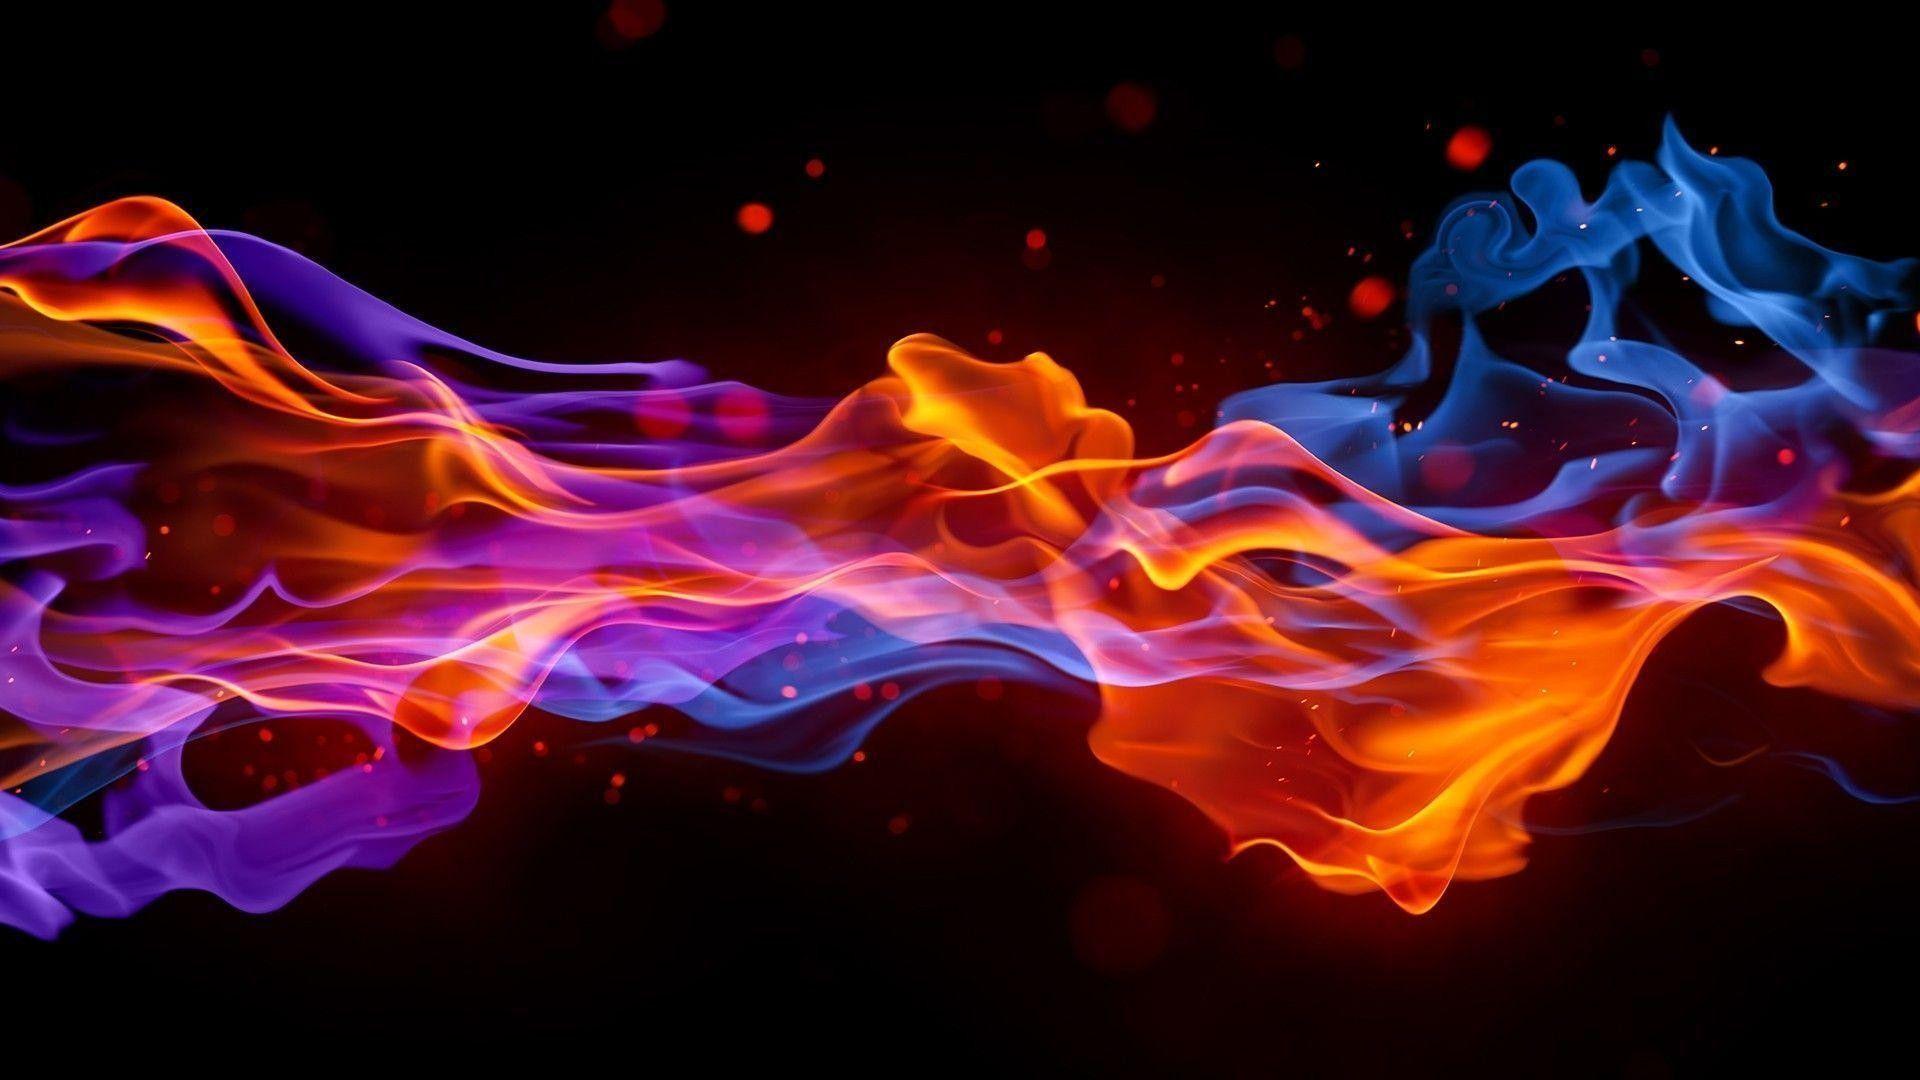 Nóng bỏng, sáng lấp lánh và đầy sức mạnh, những hình nền Flame chắc chắn sẽ thu hút bạn bằng cách làm nổi bật màn hình của bạn. Các hình ảnh này thực sự rất đặc biệt, có thể khiến bạn cảm thấy như đang có mặt trong một khối lửa khổng lồ.